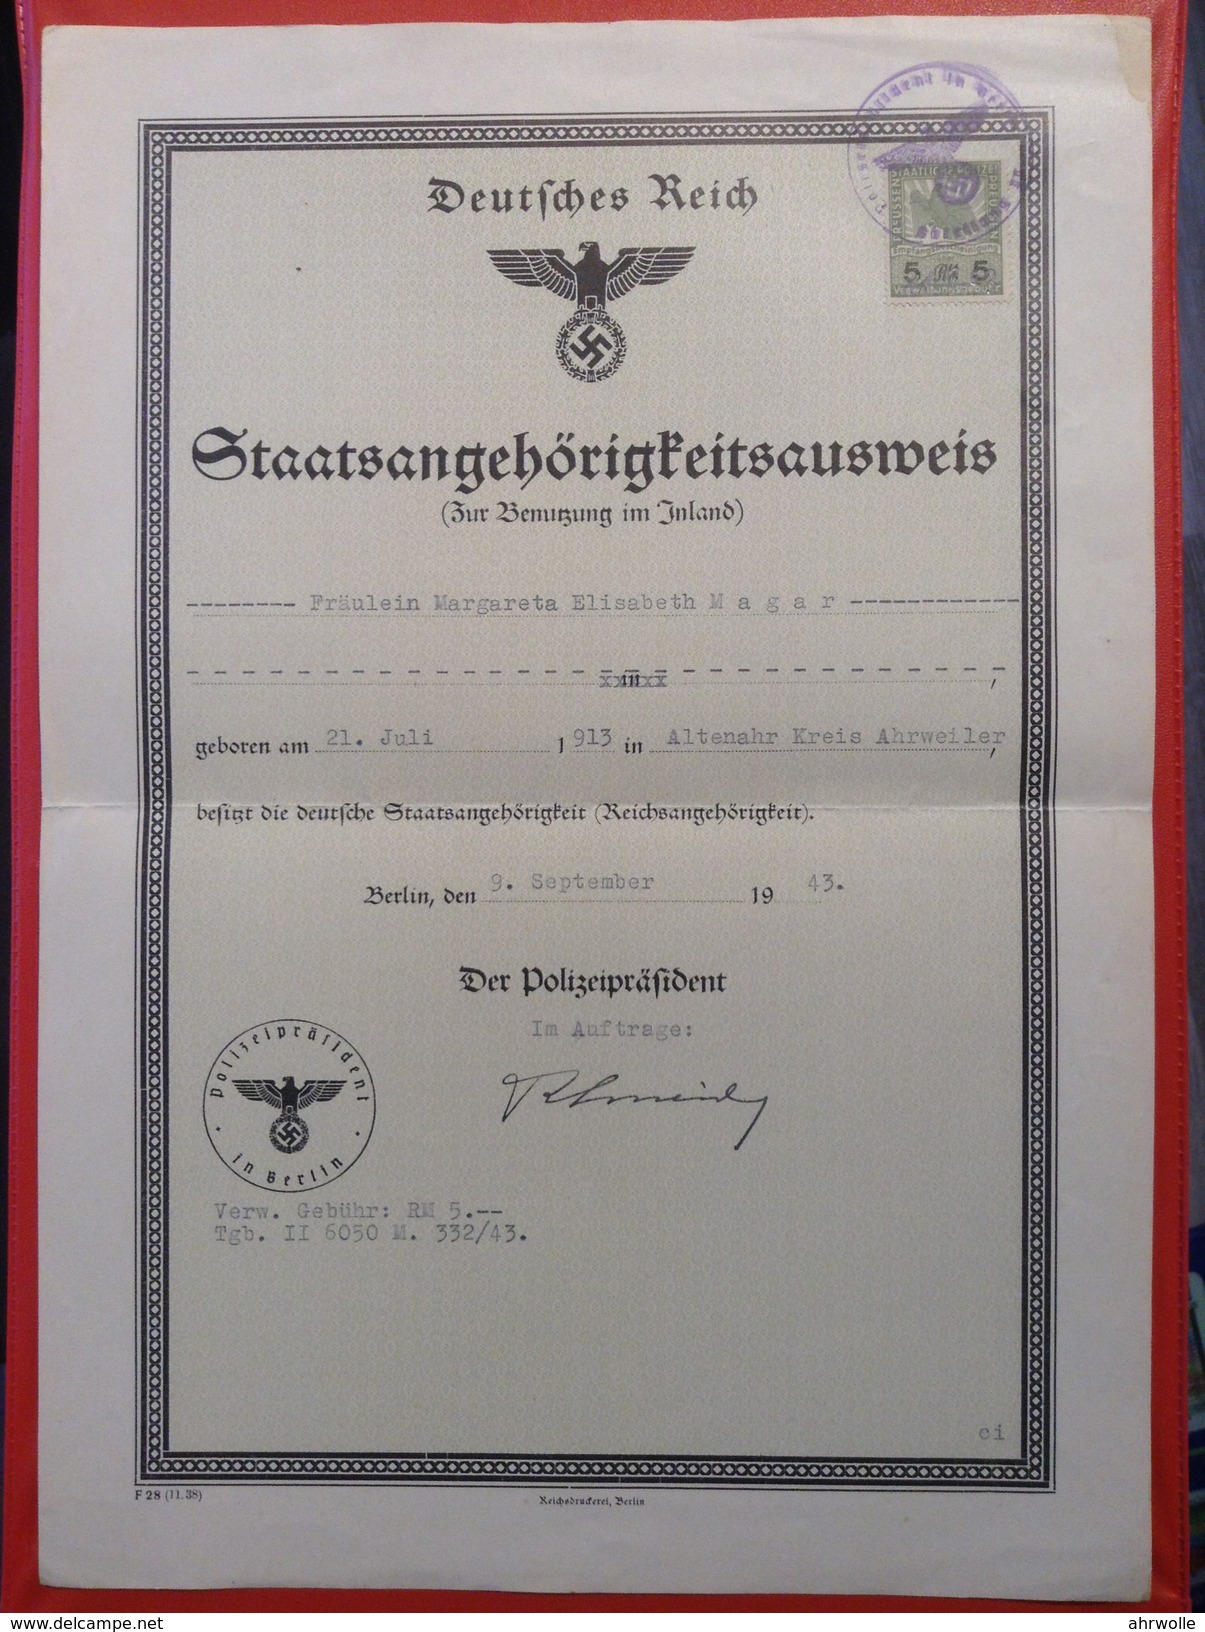 Deutsches Reich Staatsangehörigkeitsausweis Zur Benutzung Im Inland Berlin 1943 Stempel Polizeipräsident - Diplome Und Schulzeugnisse